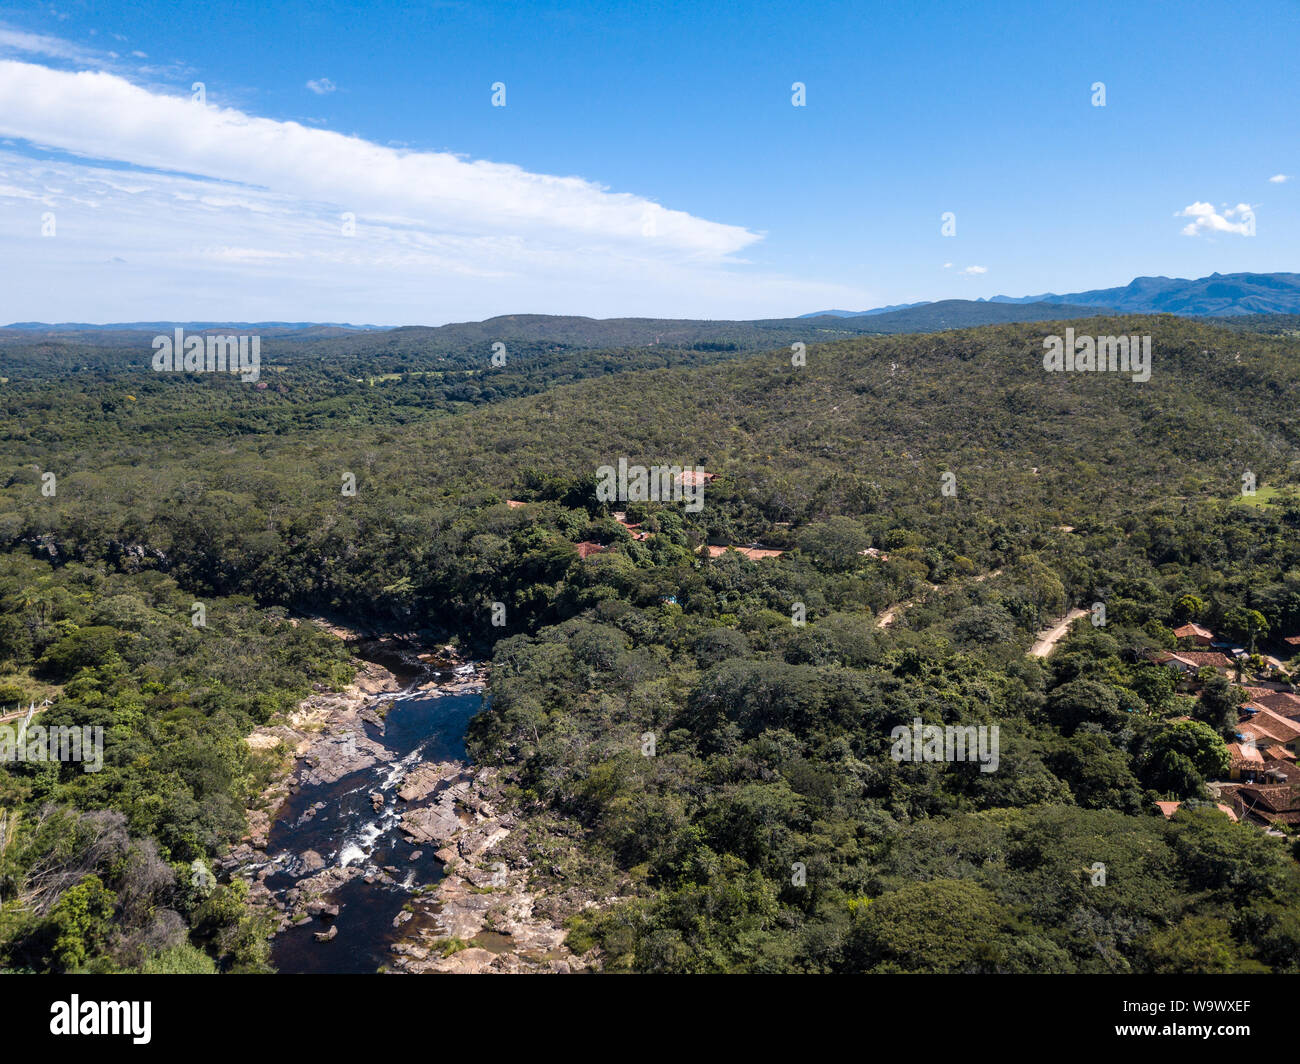 Hermosa vista aérea de la Serra do cipo en Minas Gerais con bosques, ríos y montañas en un día soleado de verano con el cielo azul. Paisaje de la Brazilia Foto de stock